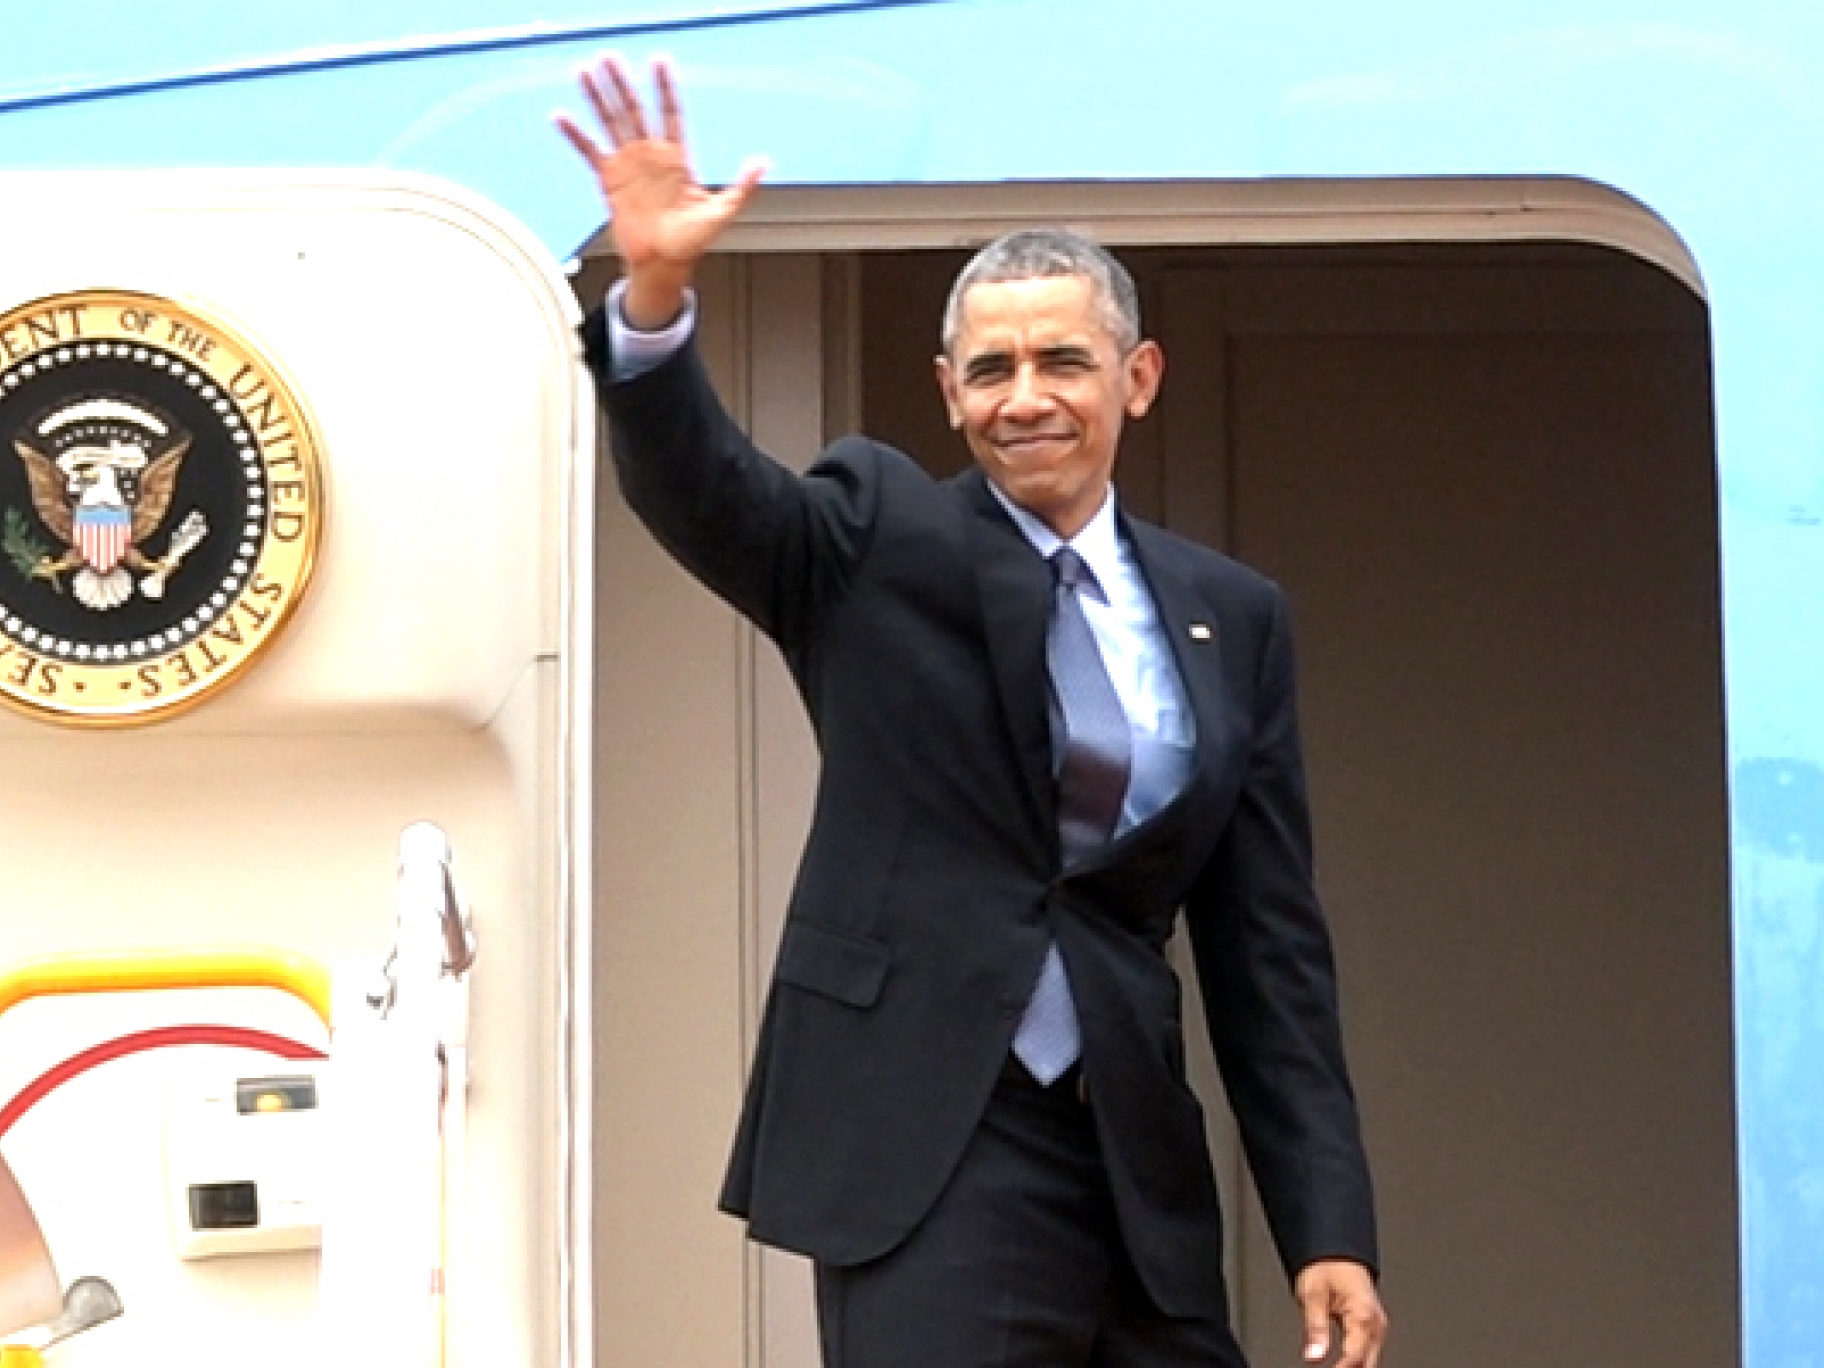 Báo chí Thụy Sỹ ca ngợi chuyến thăm Việt Nam của Tổng thống Obama